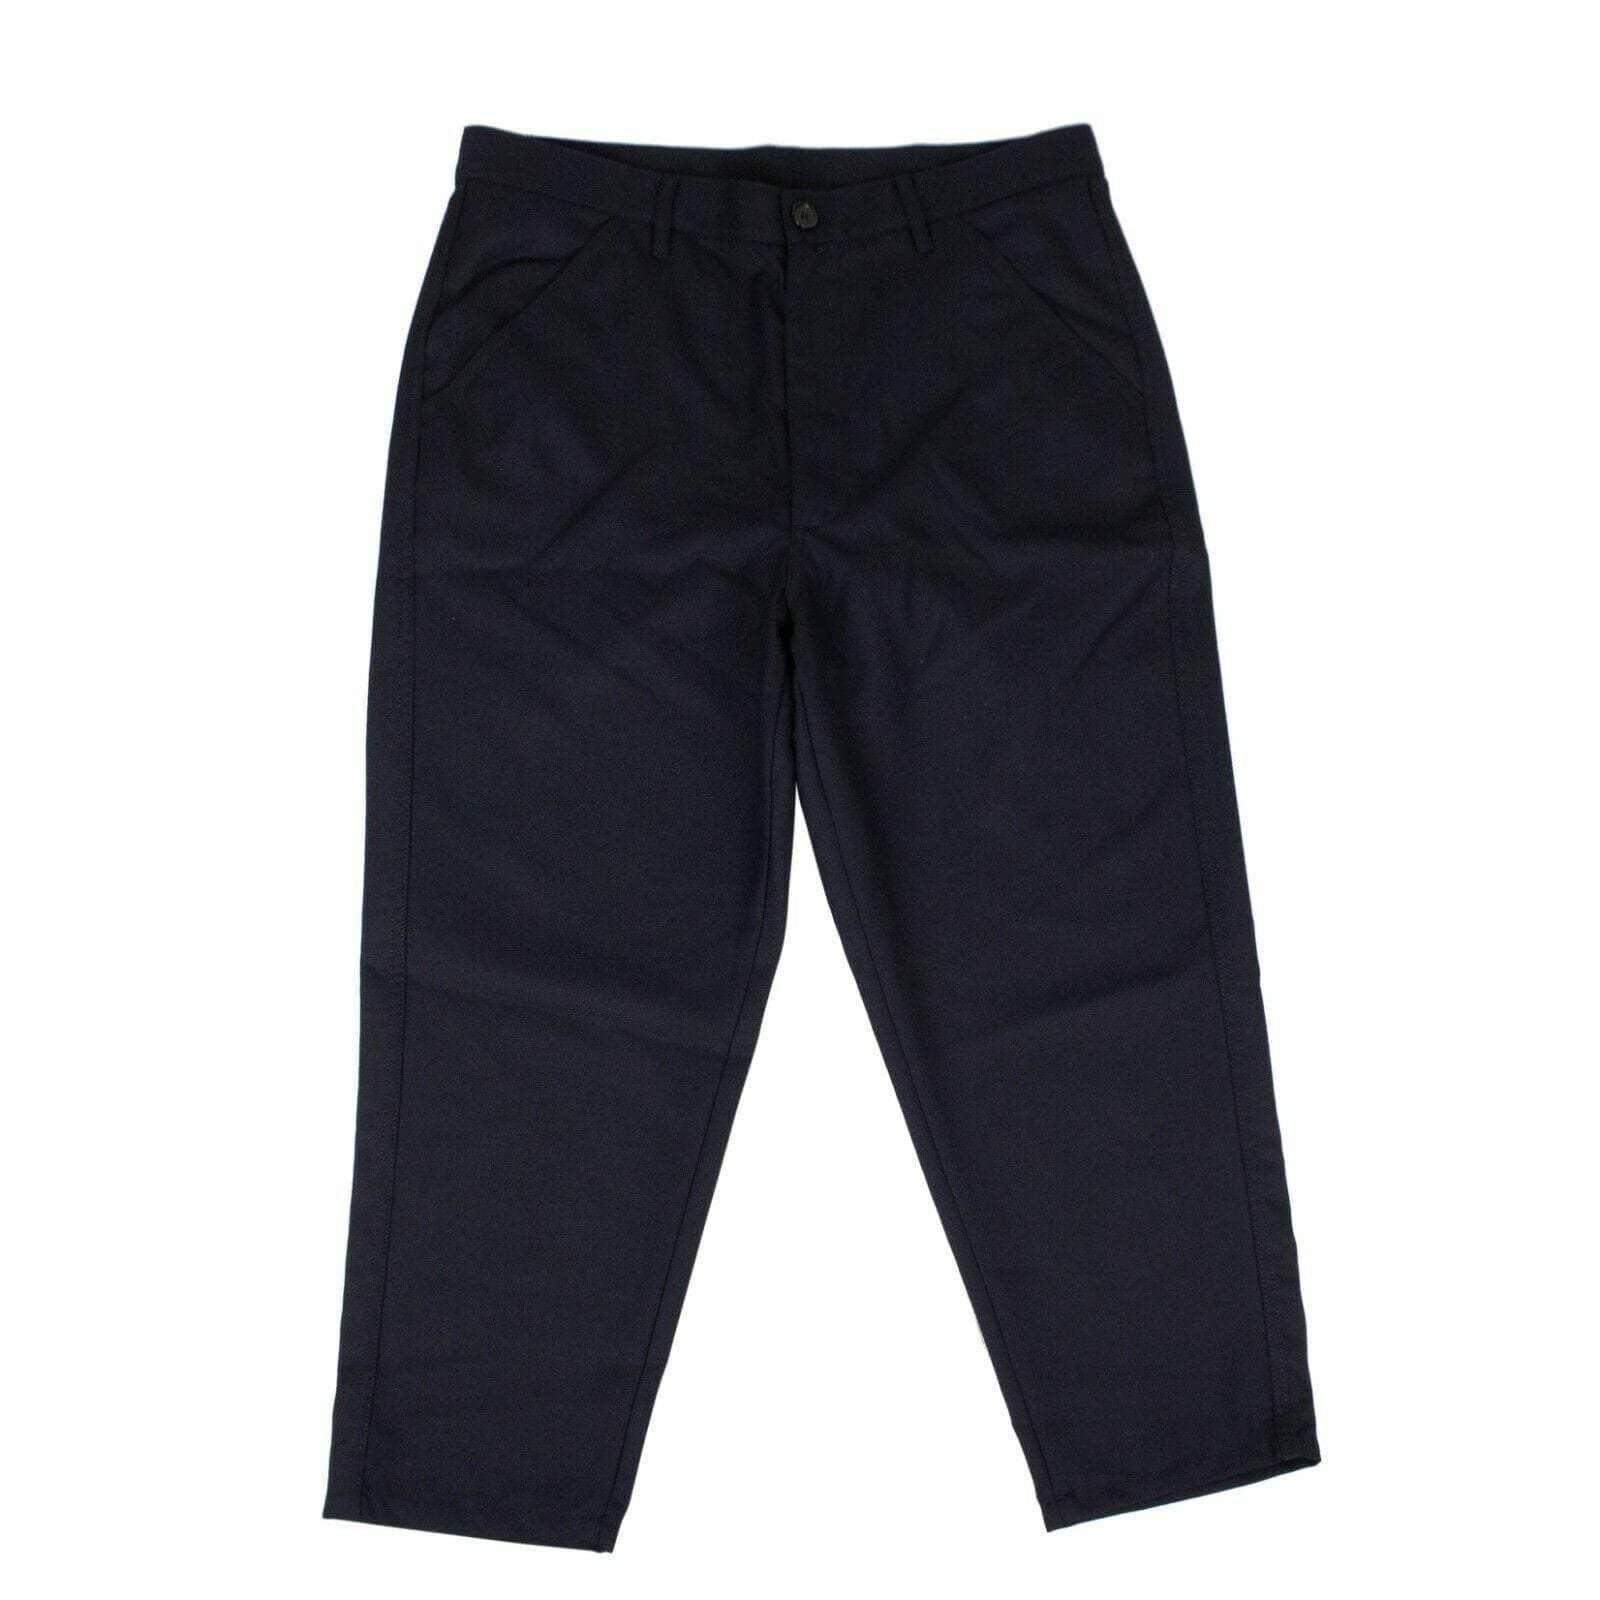 CDG SHIRT BOYS Men's Pants XL / S27937 Polyester Pants - Navy 80ST-CDG-1000/XL 80ST-CDG-1000/XL